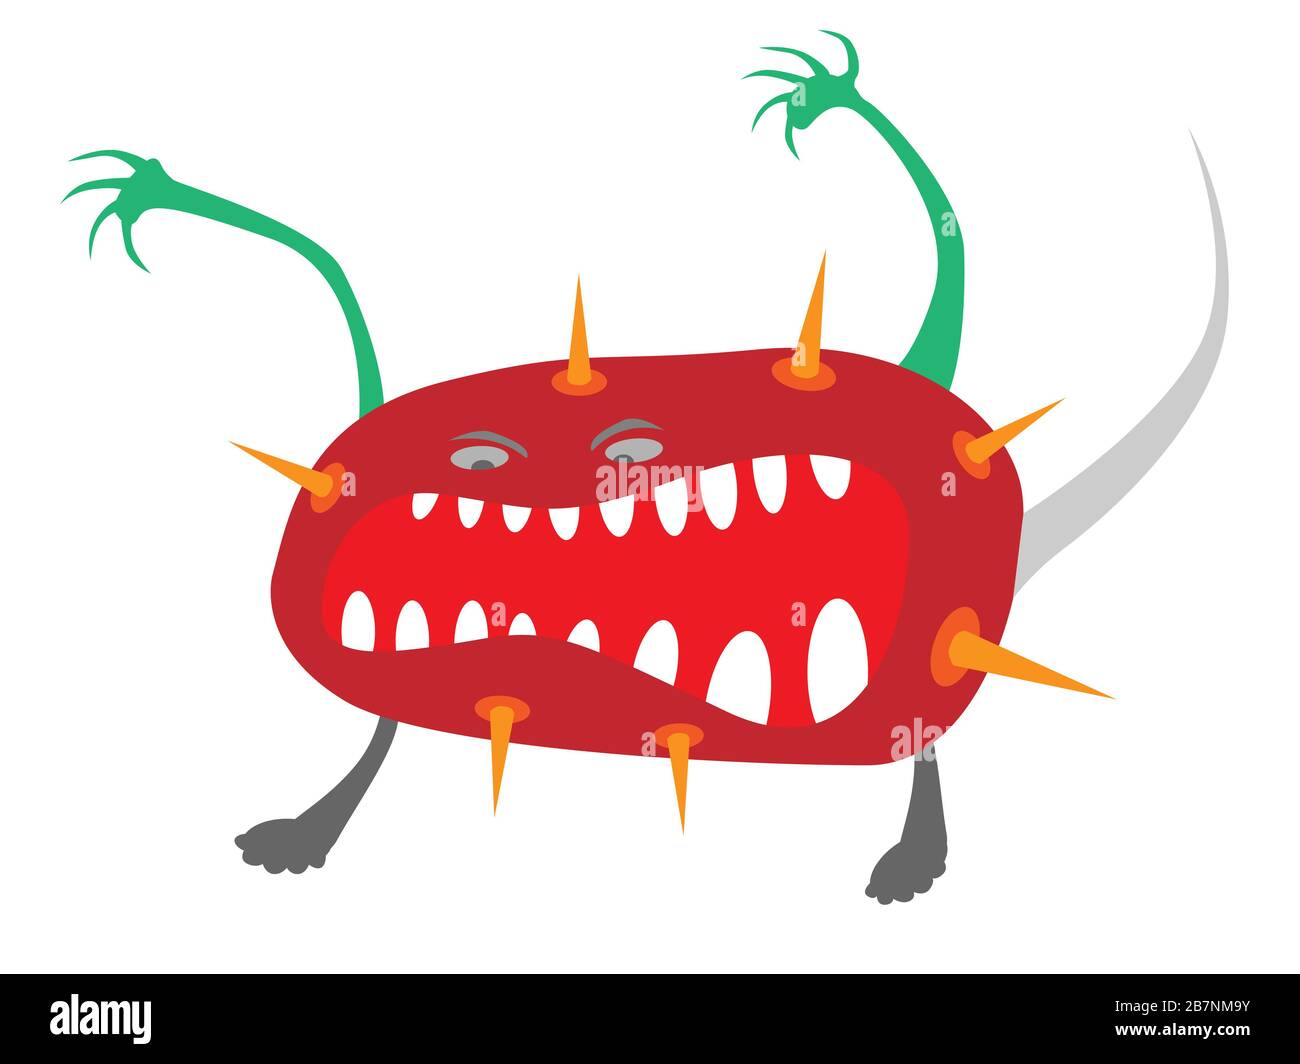 doodle virus, vector illustration in cartoon style Stock Photo